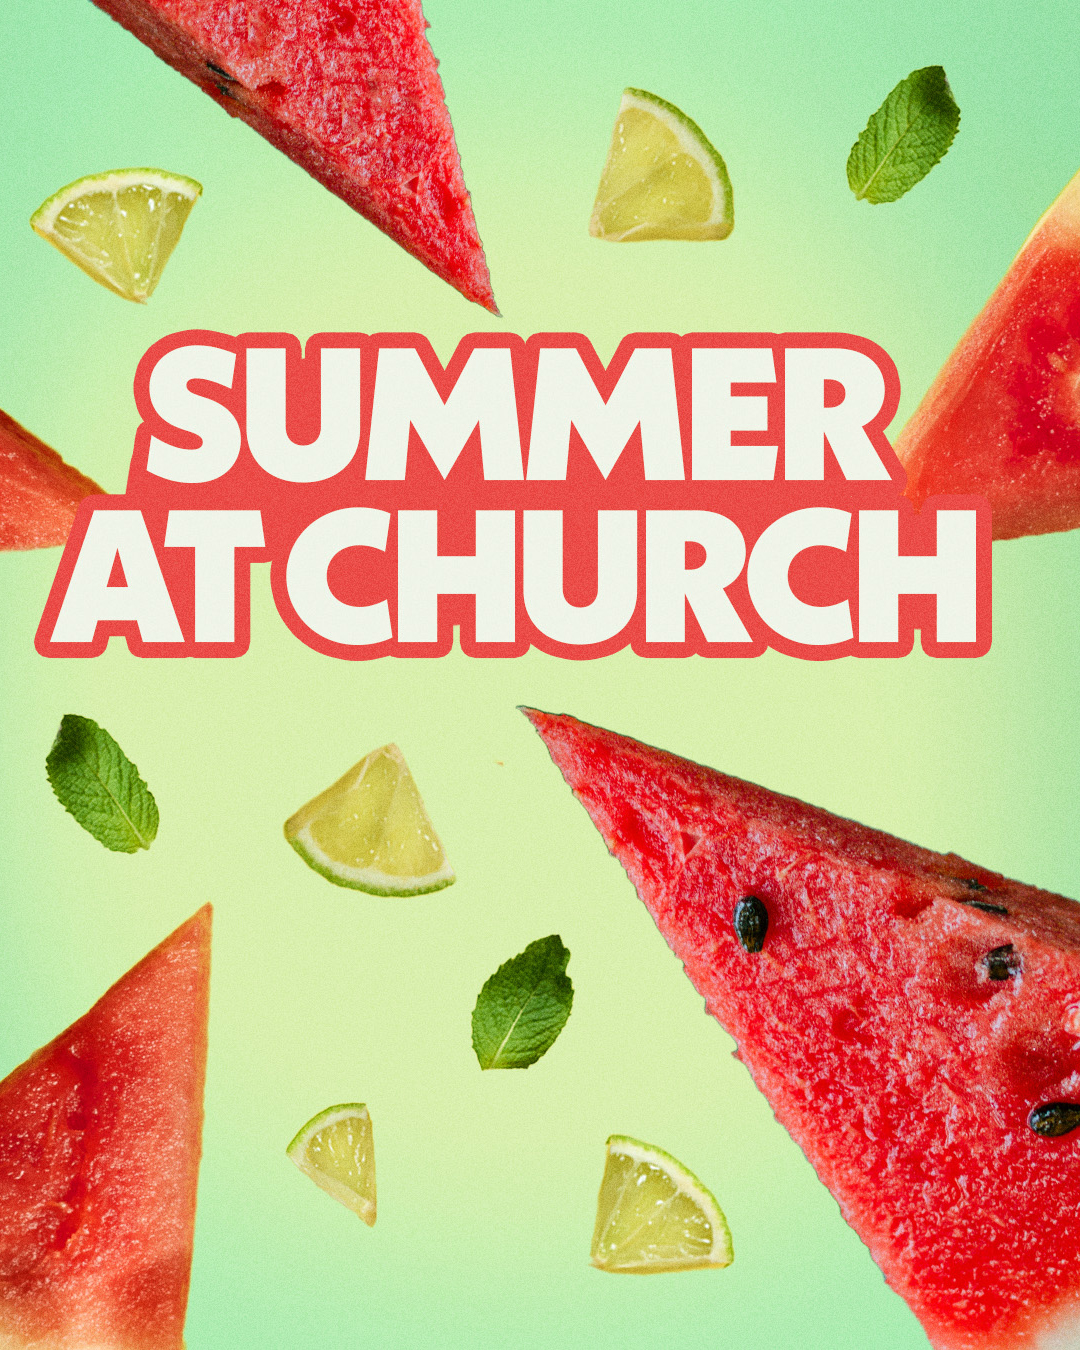 Summer at church